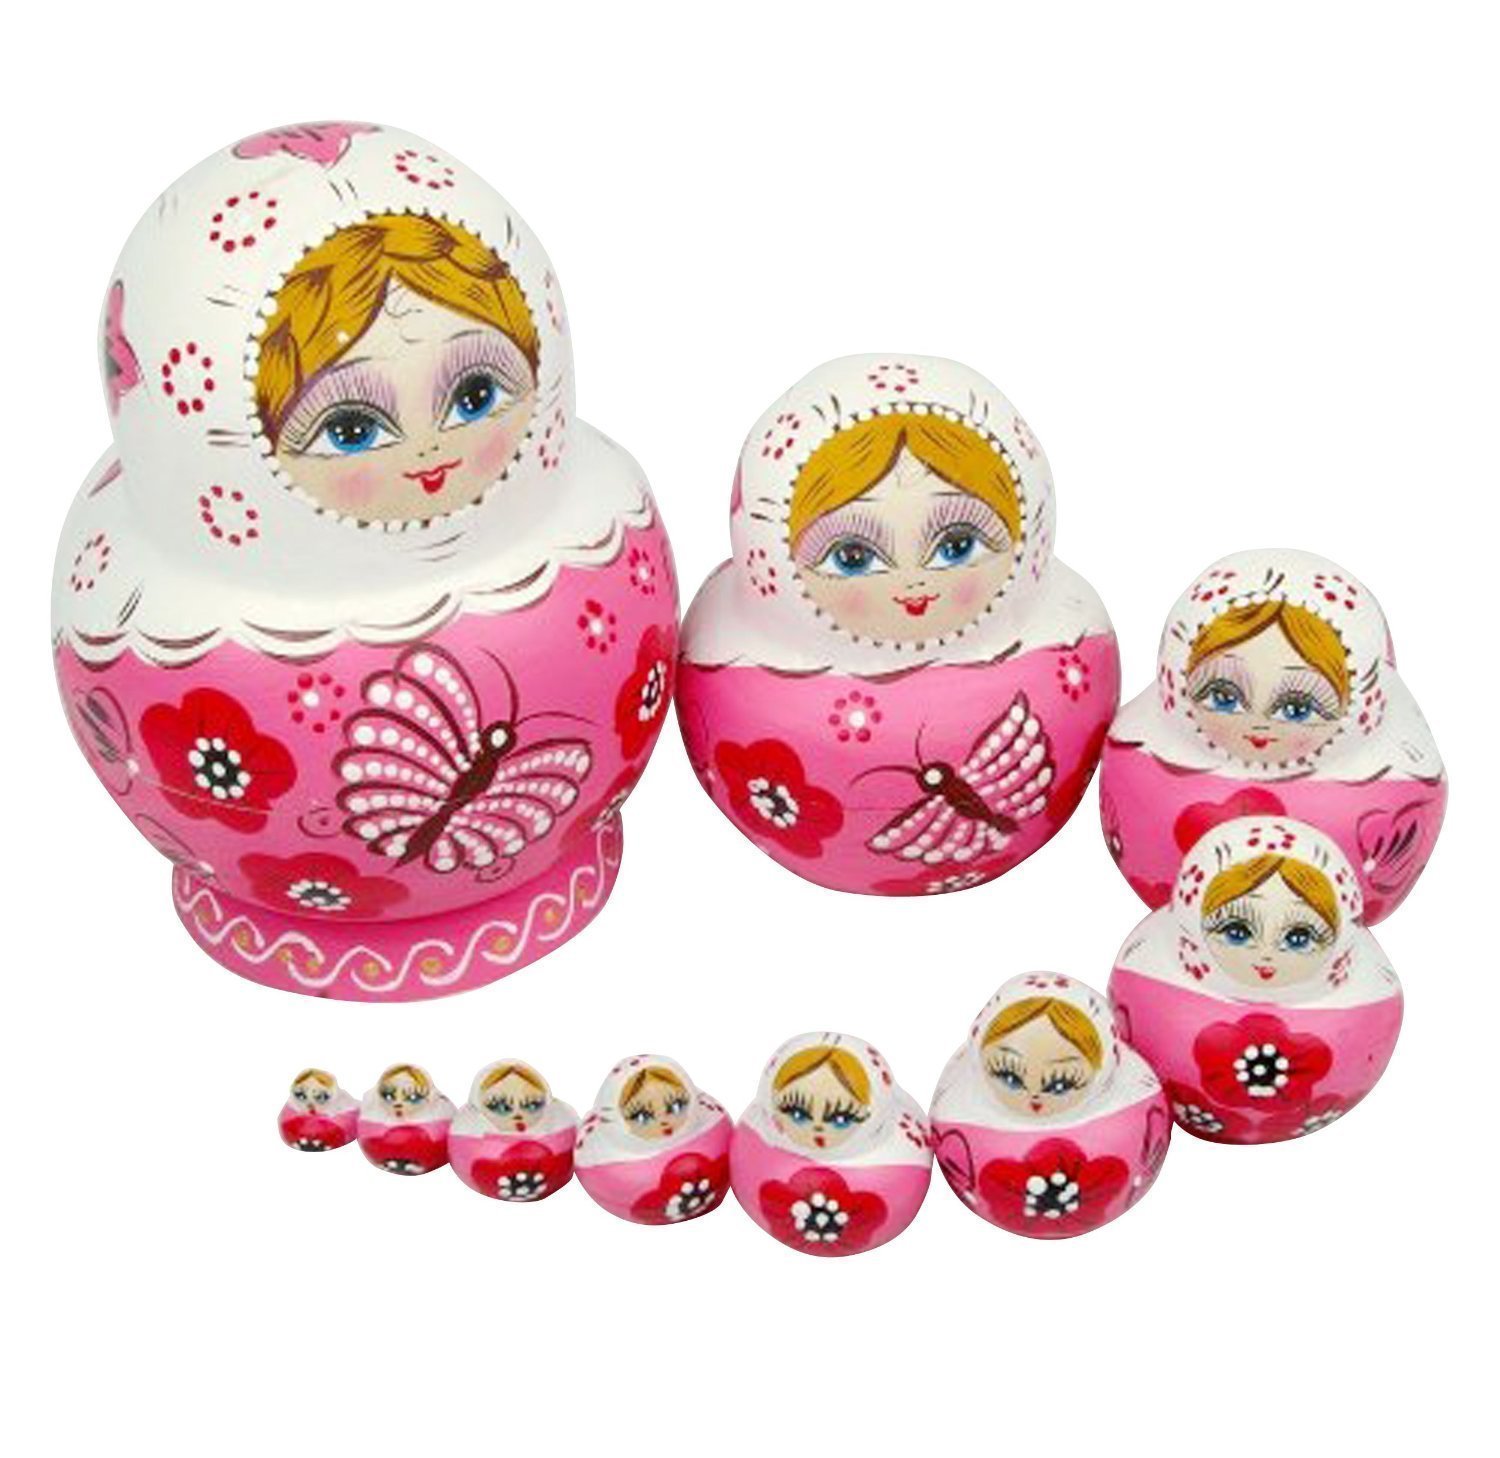 Amazon.com: Leegoal 10pcs Pink Wooden Russian Nesting Dolls Gift ...